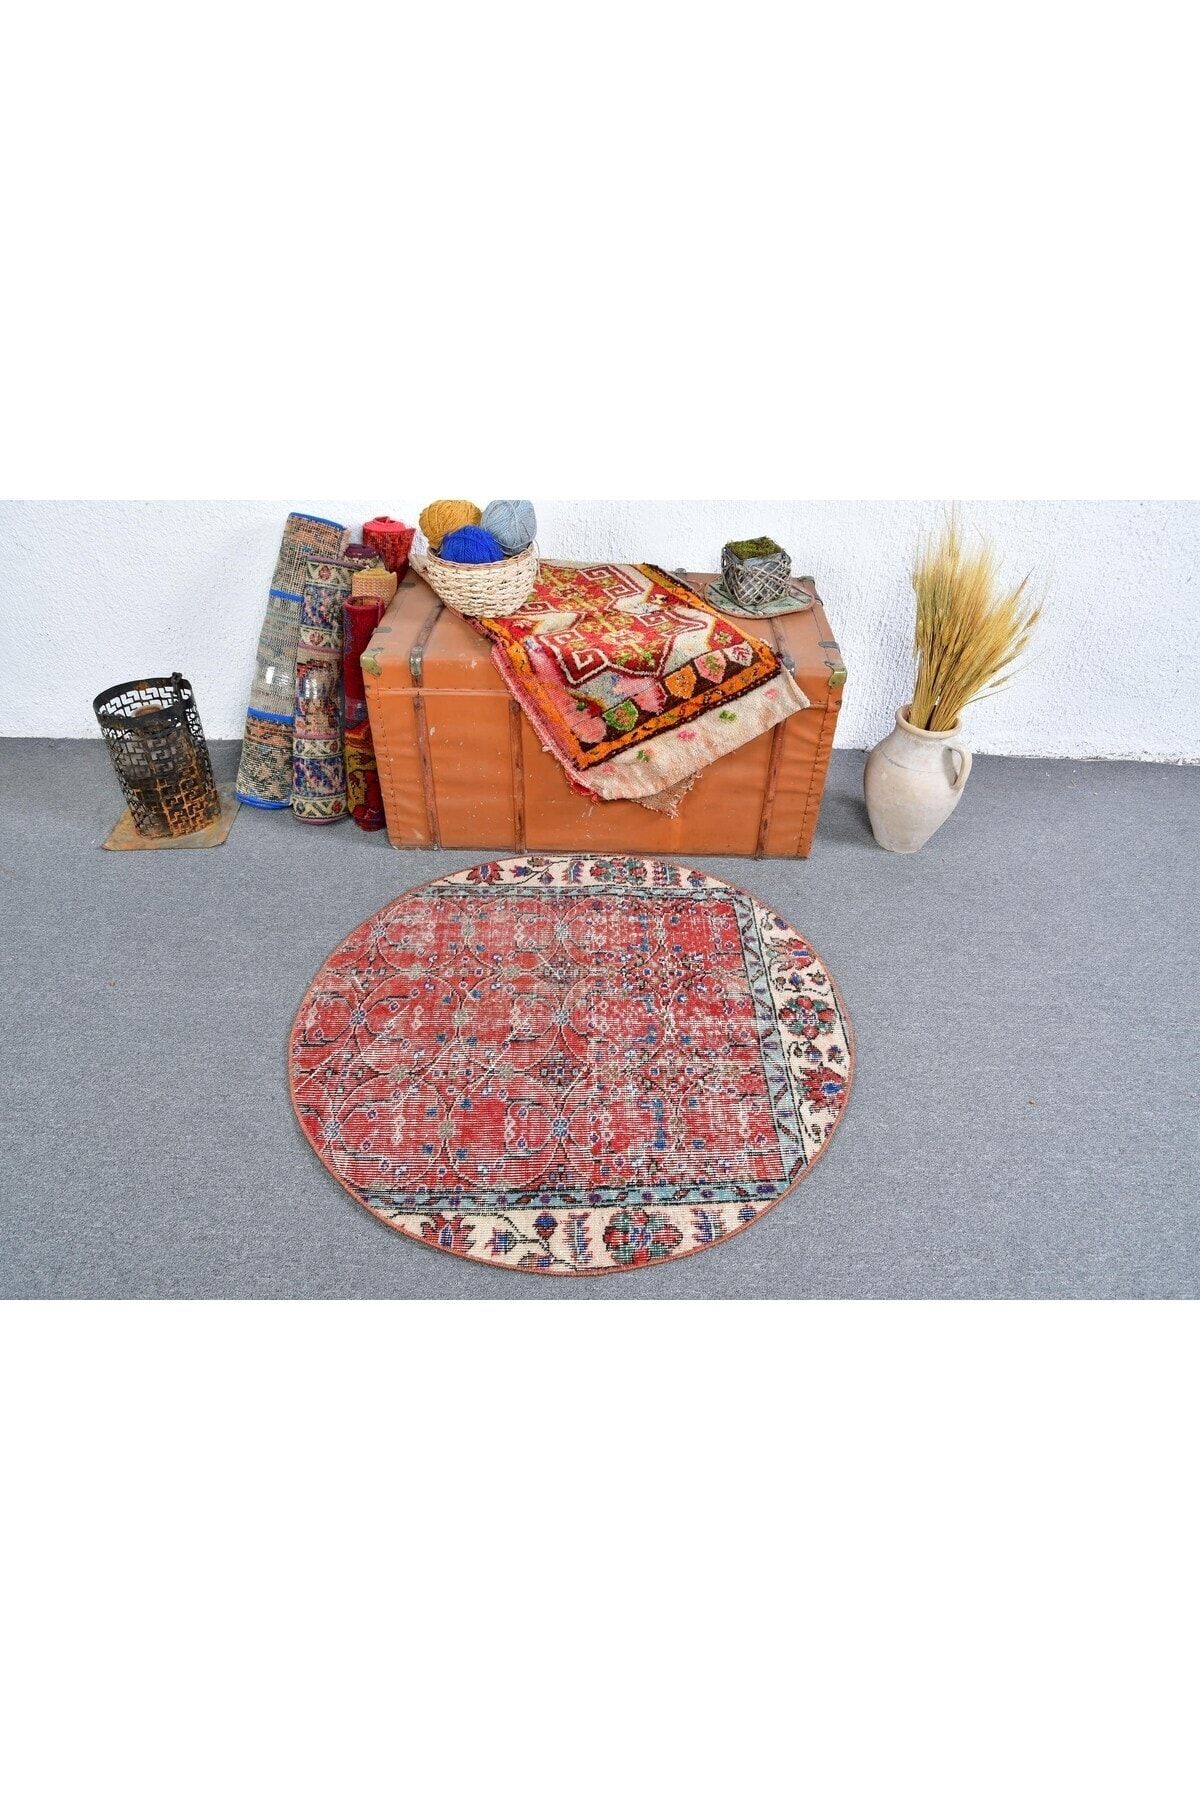 Kayra Export Antik Halı, Araba paspası Halı, Türk Halı, 105x105 cm Küçük Halı, Kırmızı Farsça Halı